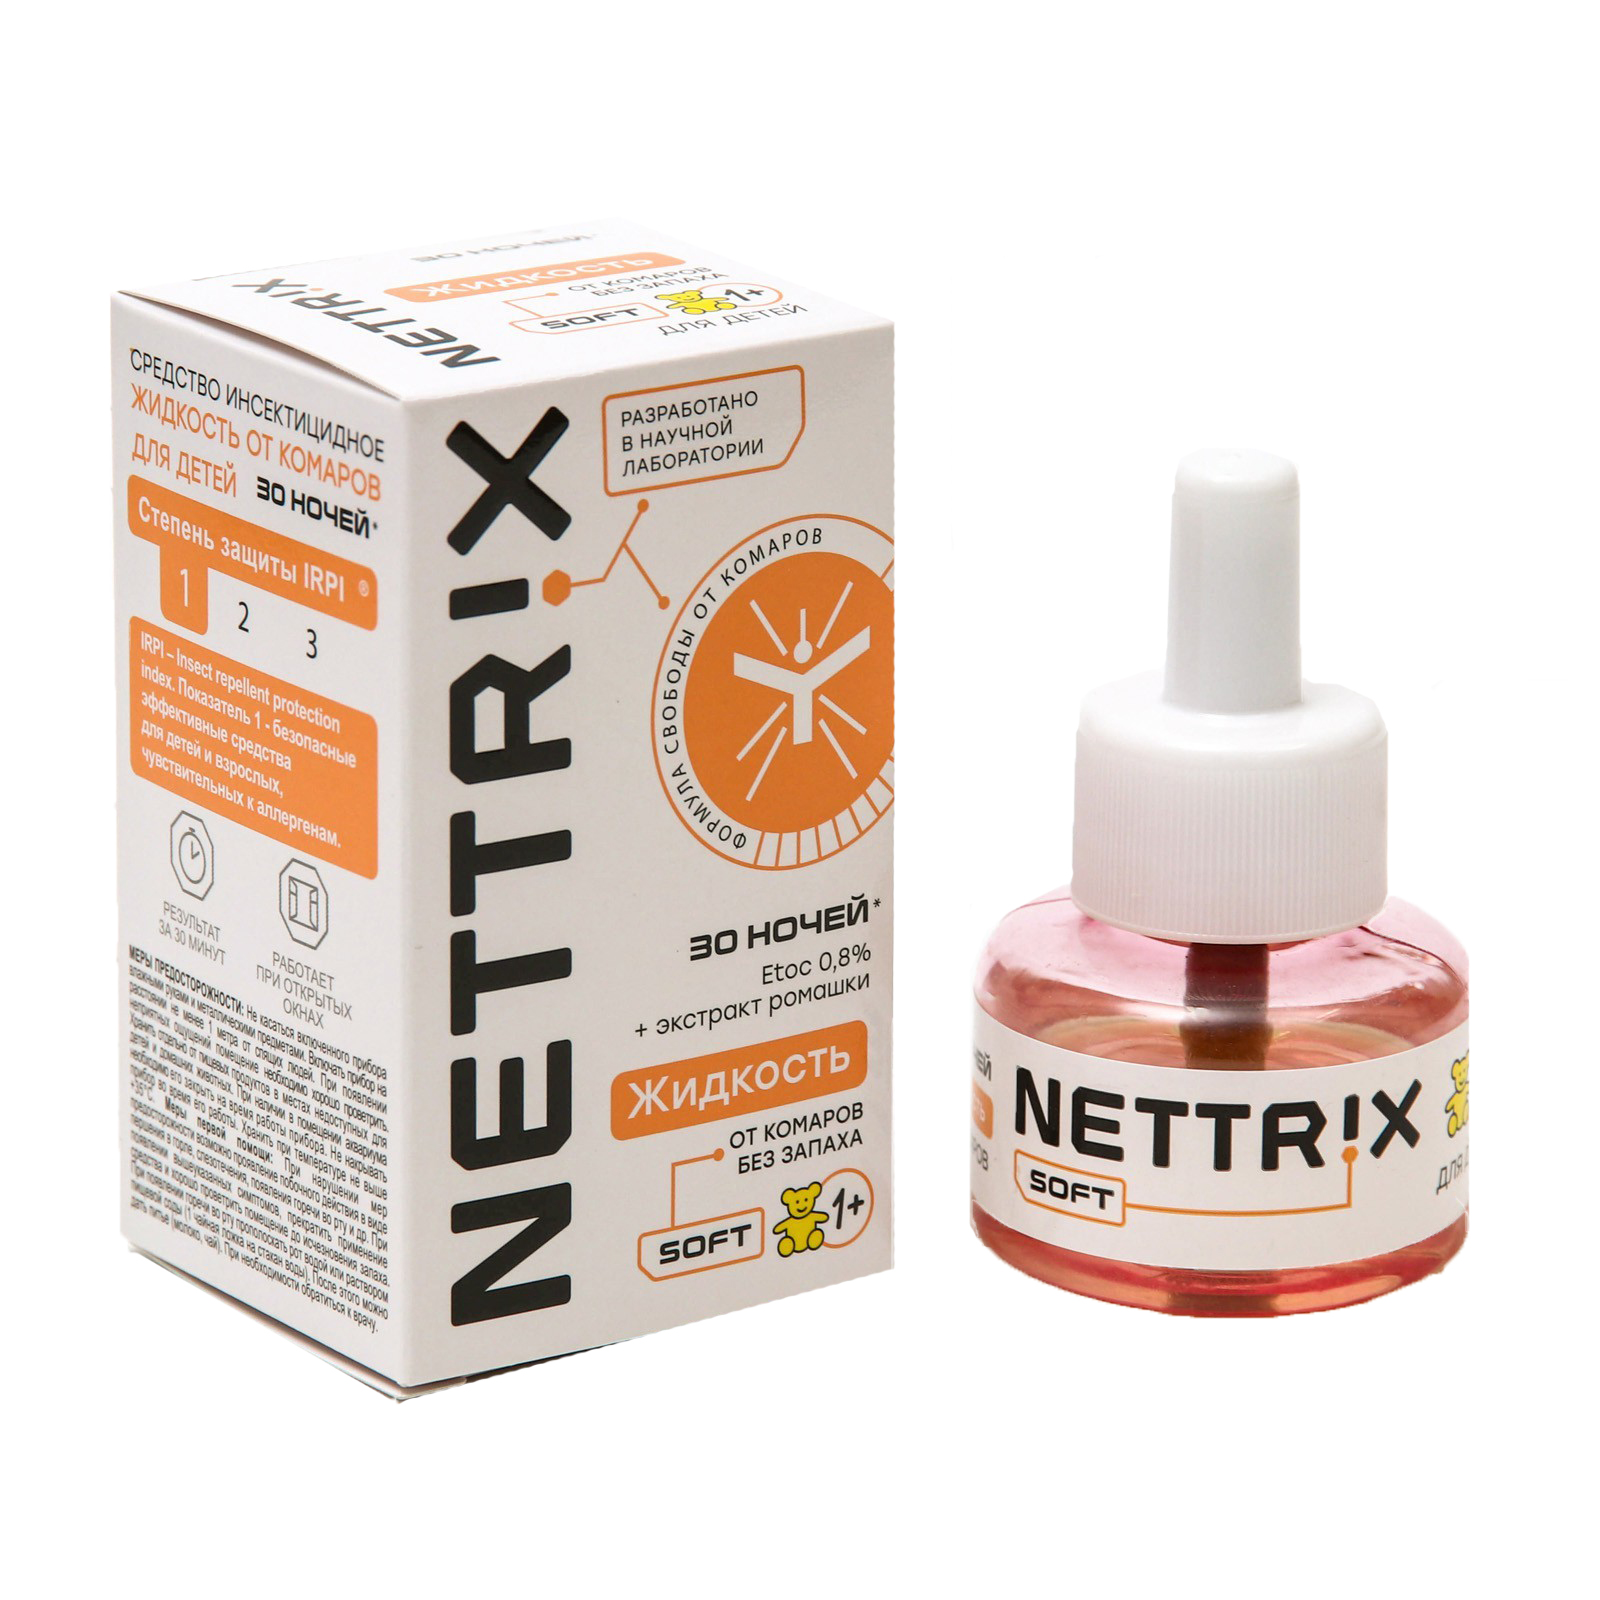 Жидкость от комаров NETTRIX Soft 30 ночей - фото 2